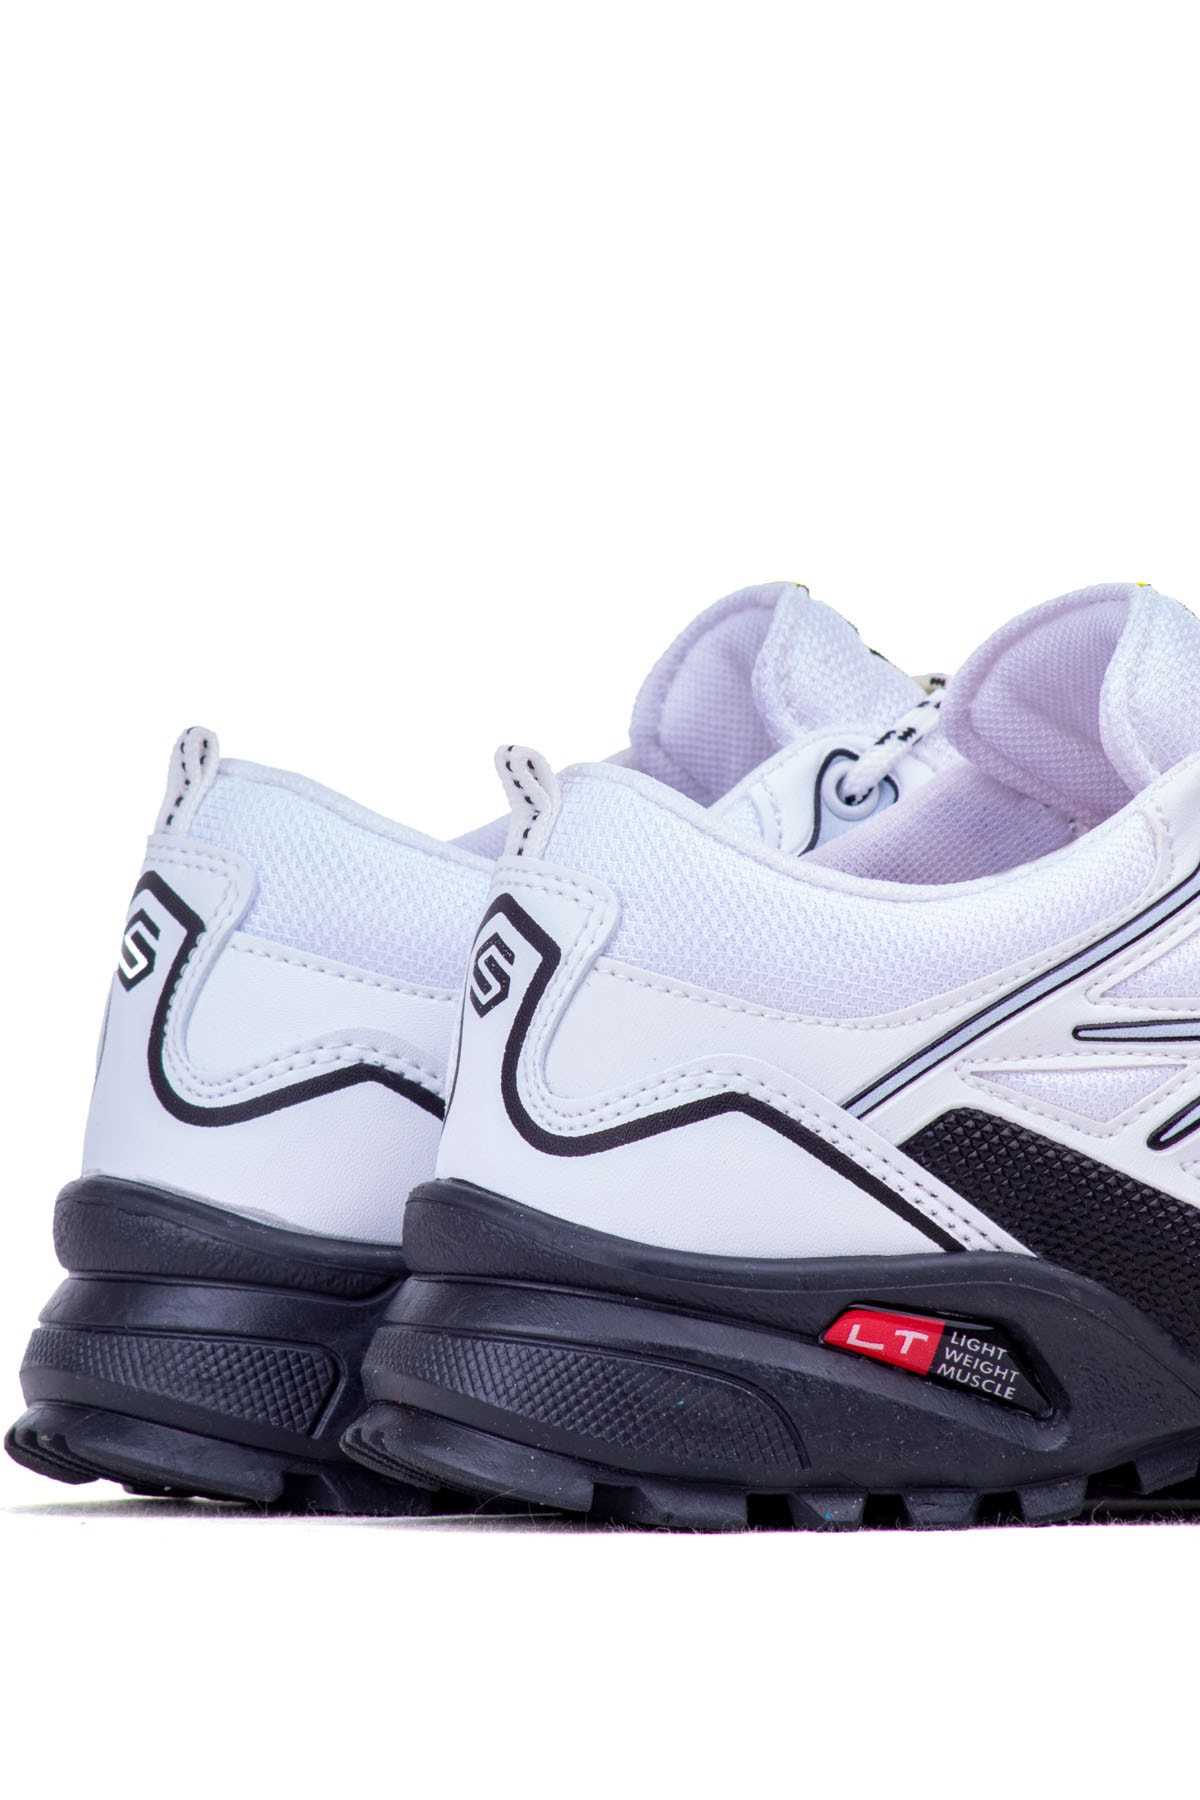 فروش کفش مخصوص پیاده روی مردانه ترک مجلسی برند Ghattix رنگ سفید ty236469414